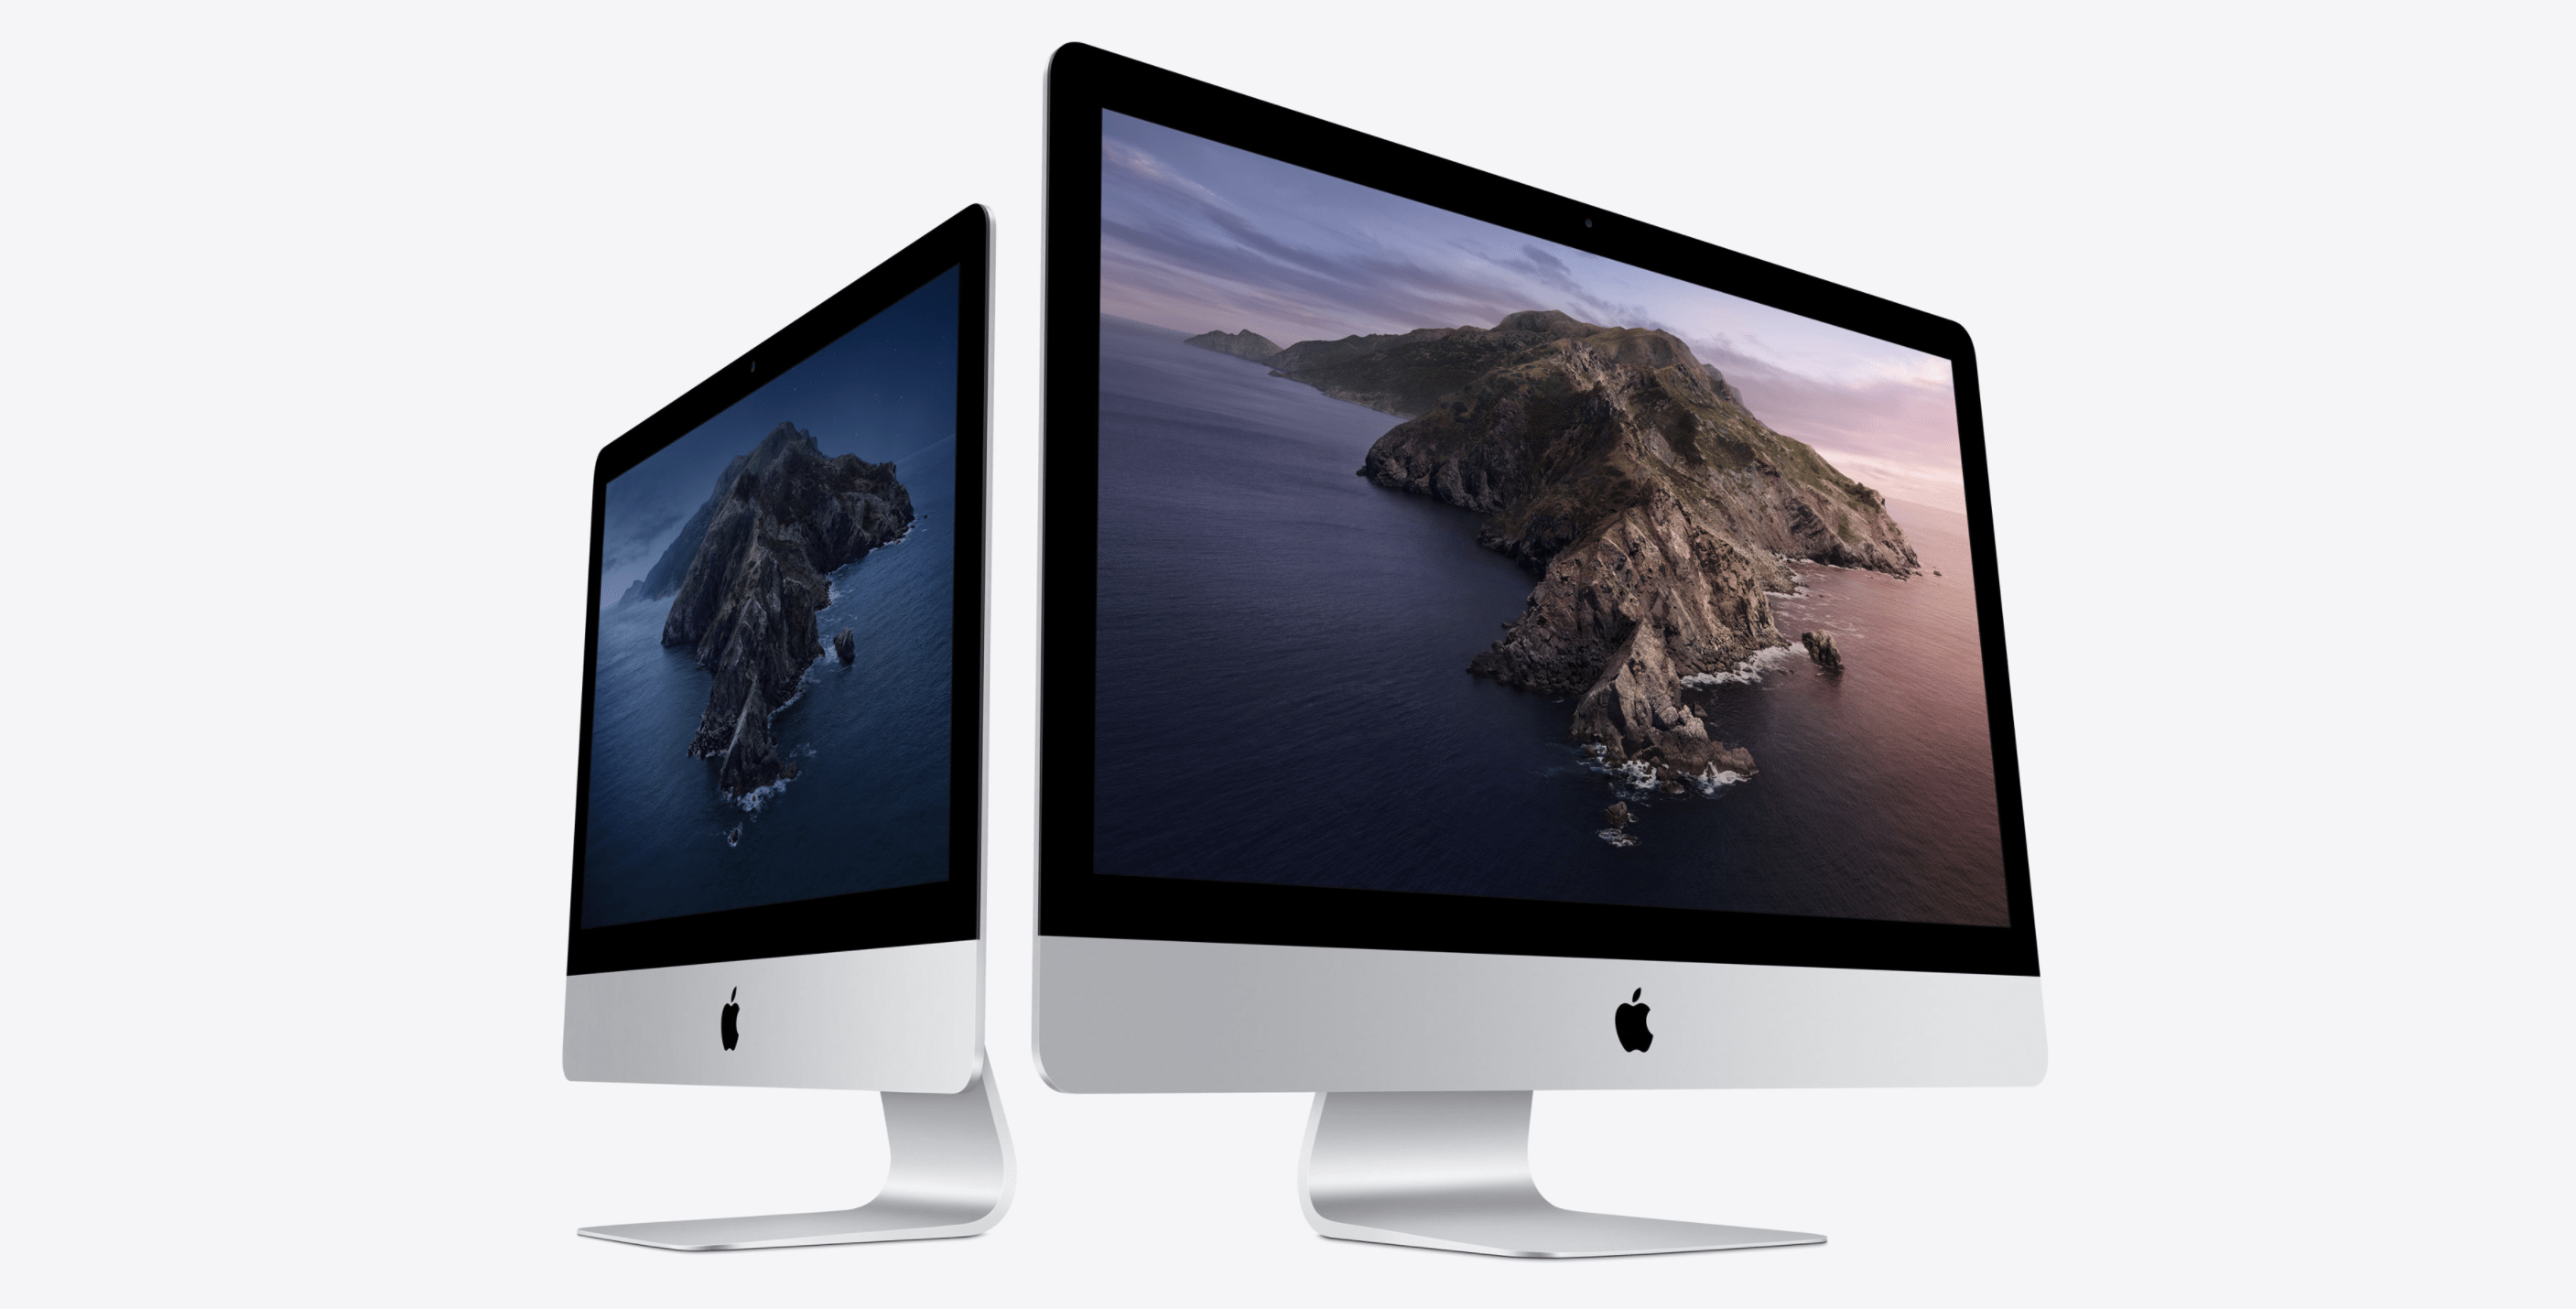 Les nouveaux iMac 27 pouces sont presque plus « pro » que les iMac Pro 